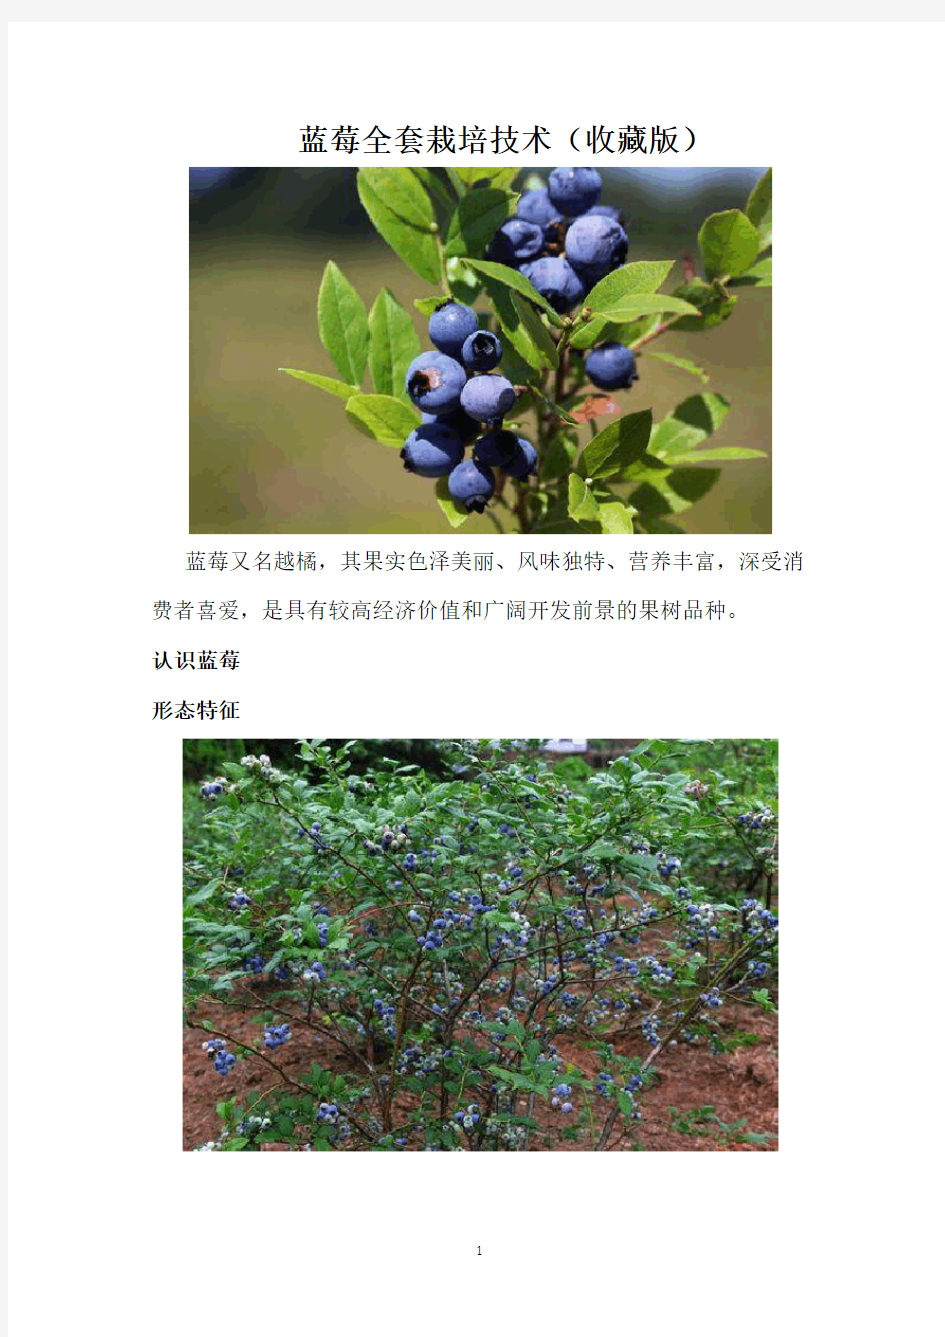 蓝莓全套栽培技术(收藏版)